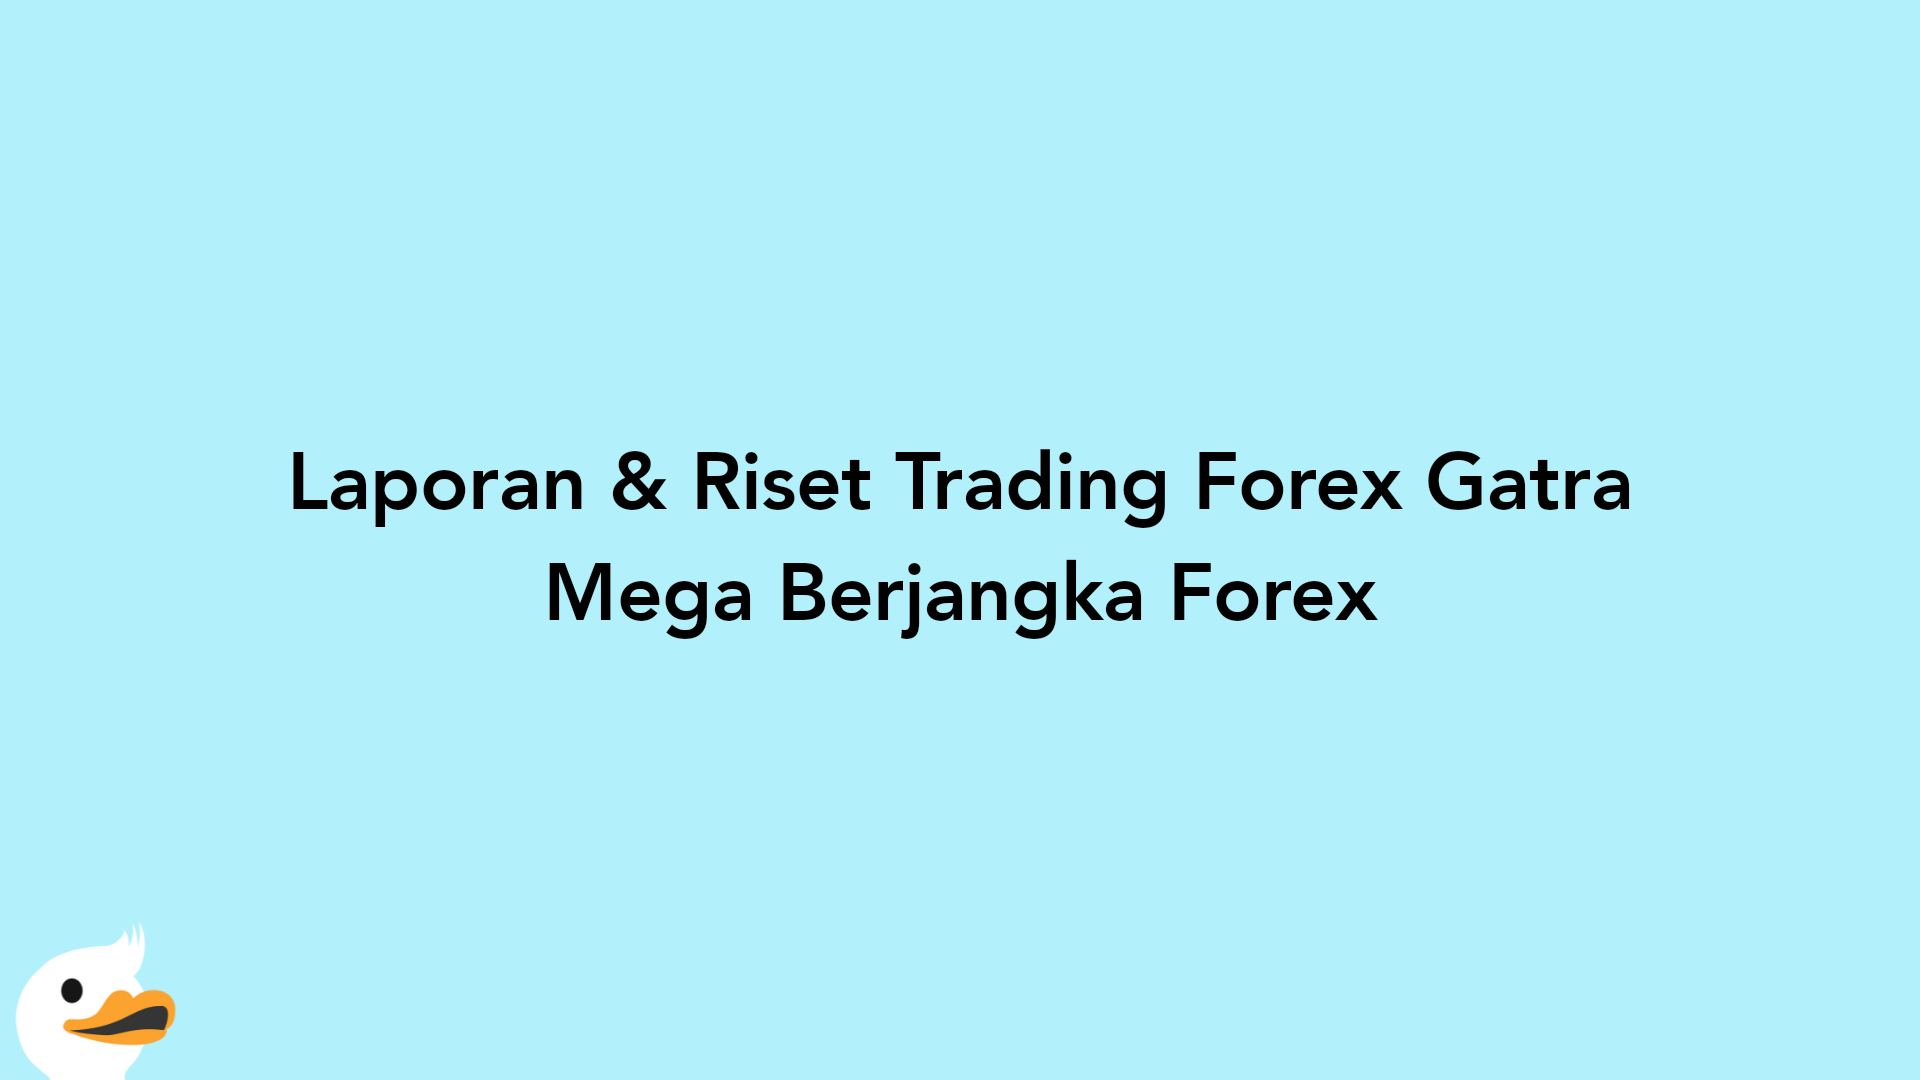 Laporan & Riset Trading Forex Gatra Mega Berjangka Forex